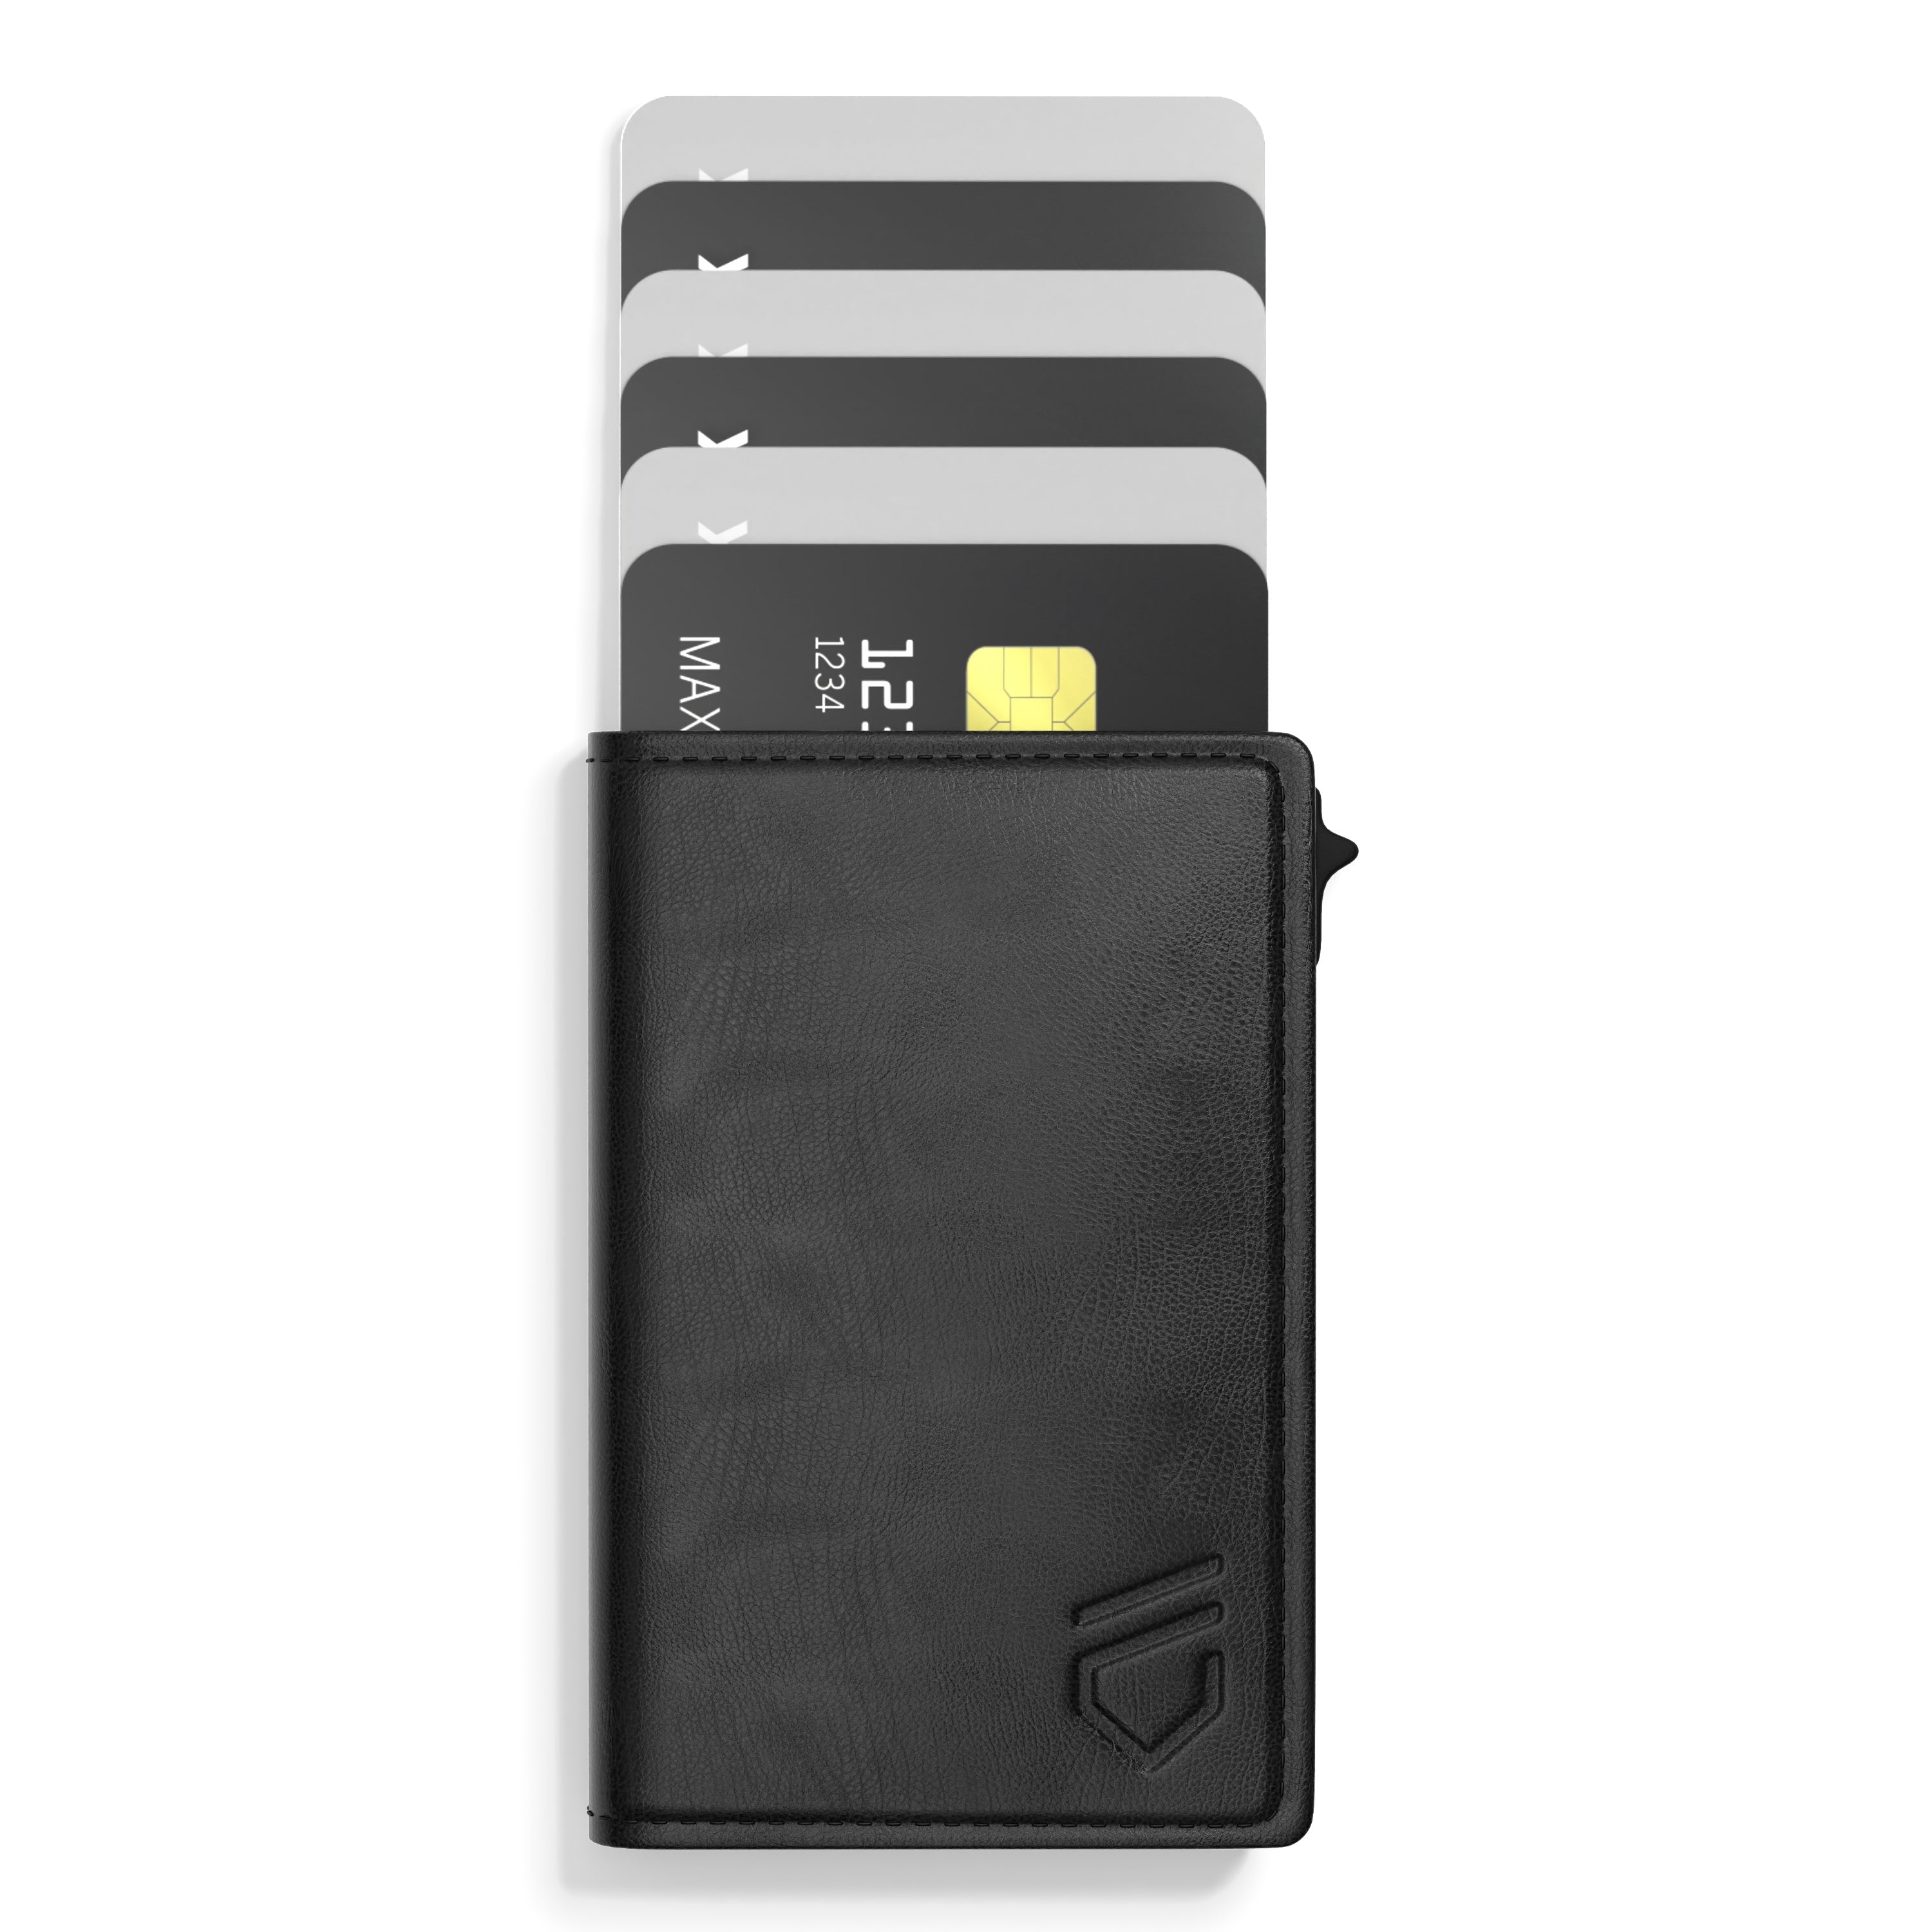  PIRNA RFID Wallet for Men, Slim Bi-Fold Carbon Credit